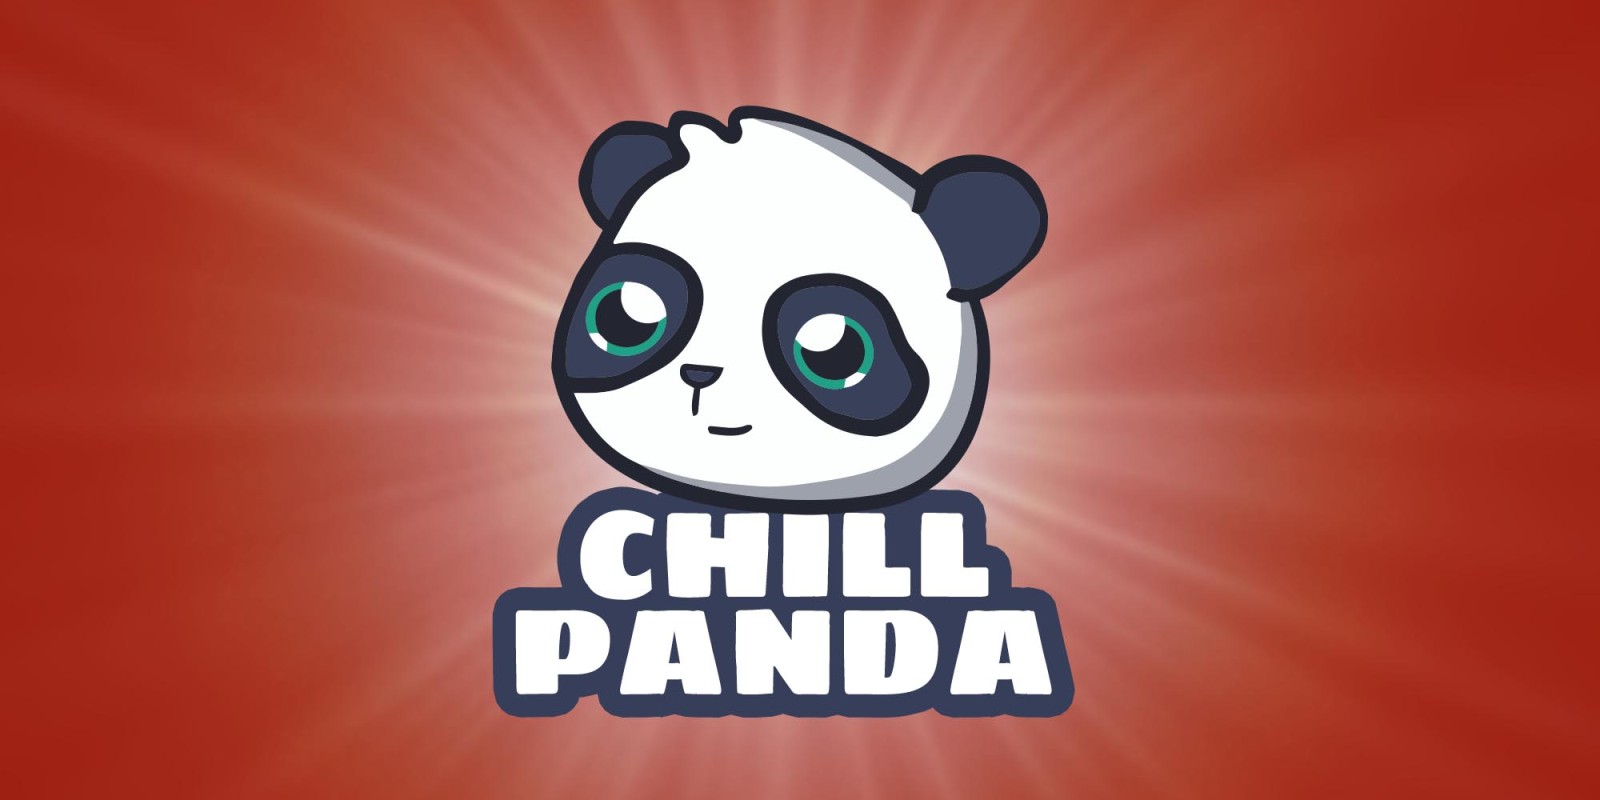 Chill Panda